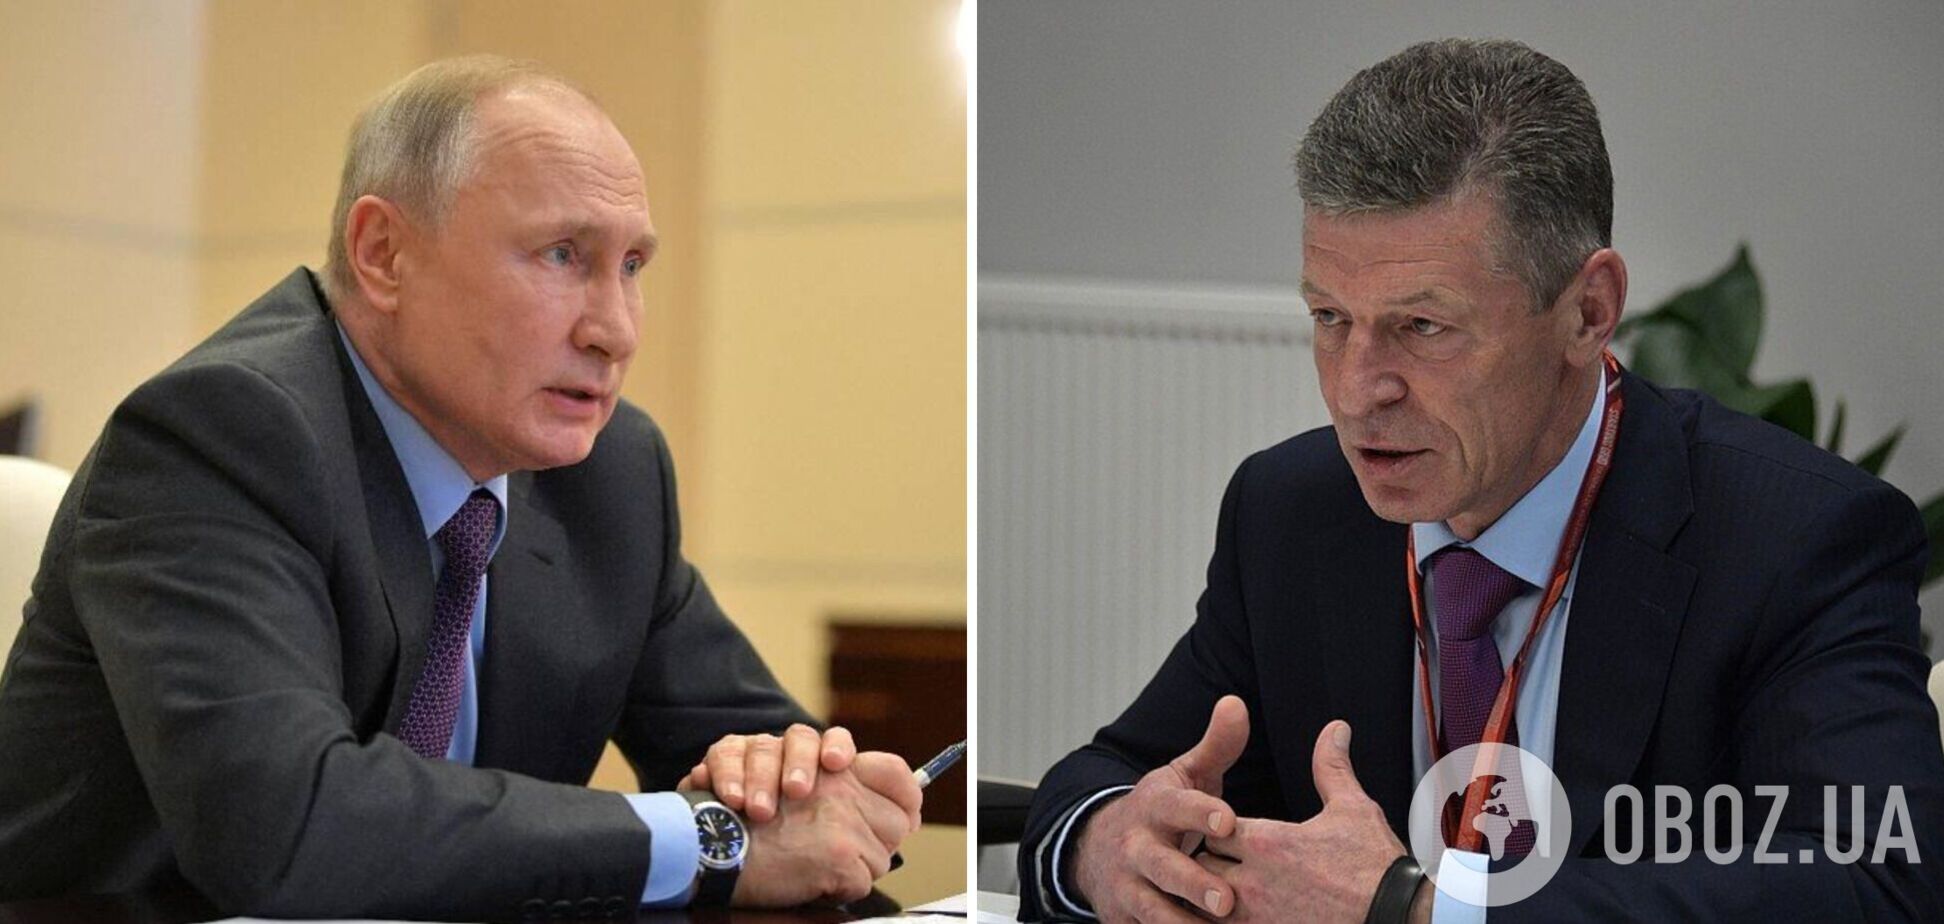 Козак запевняв Путіна, що досяг угоди з Україною, але той змінив плани на ходу – Reuters